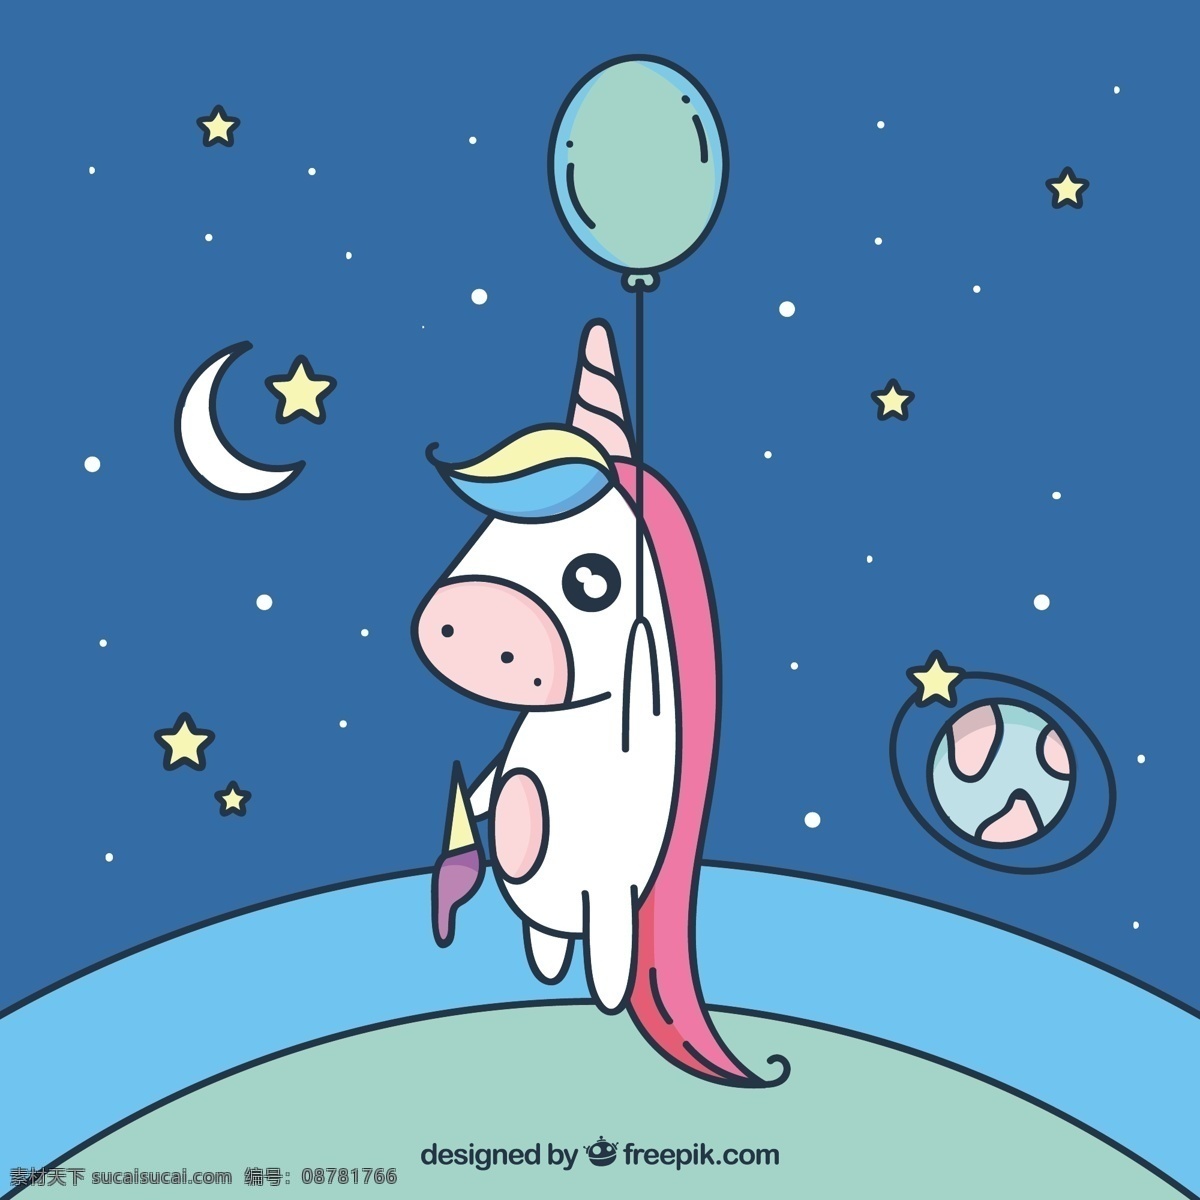 有趣 独角 兽用 气球 飞行 手 动物 天空 手绘 可爱 空间 快乐 月亮 星星 七彩 马 夜 画 魔术 行星 麒麟 仙女